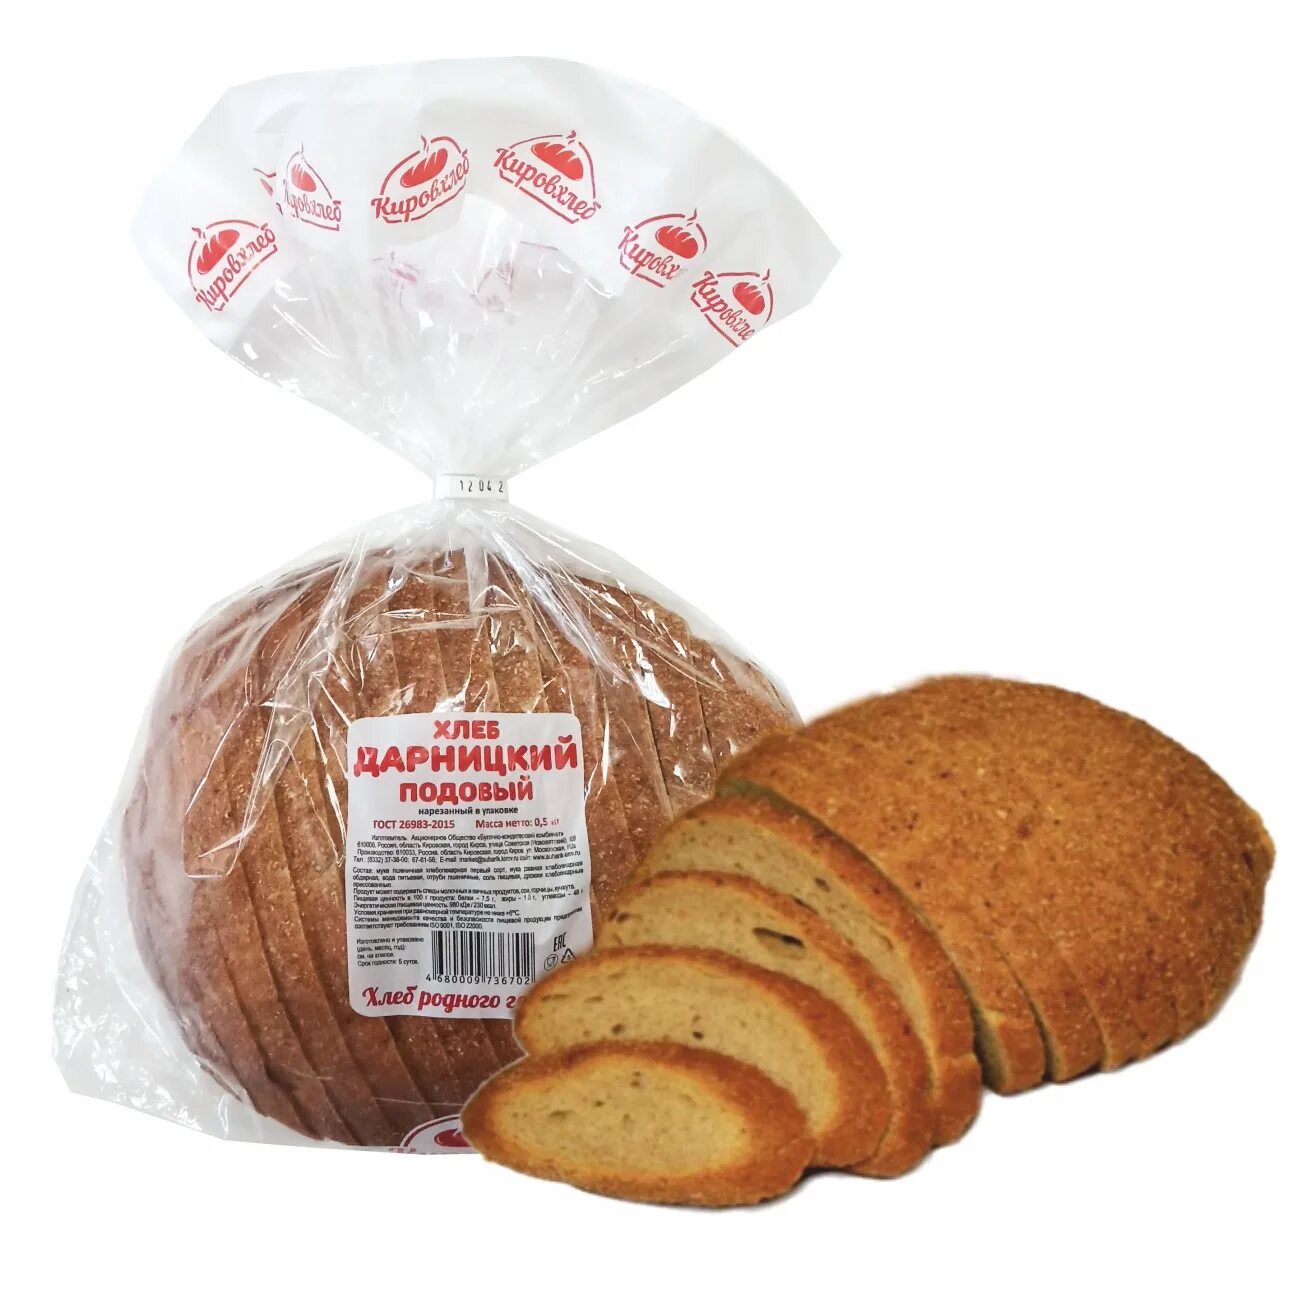 Подовый хлеб это какой. Хлеб Дарницкий подовый. Хлеб ржаной подовый. Подовые хлебобулочные изделия. Хлеб подовый в упаковке.